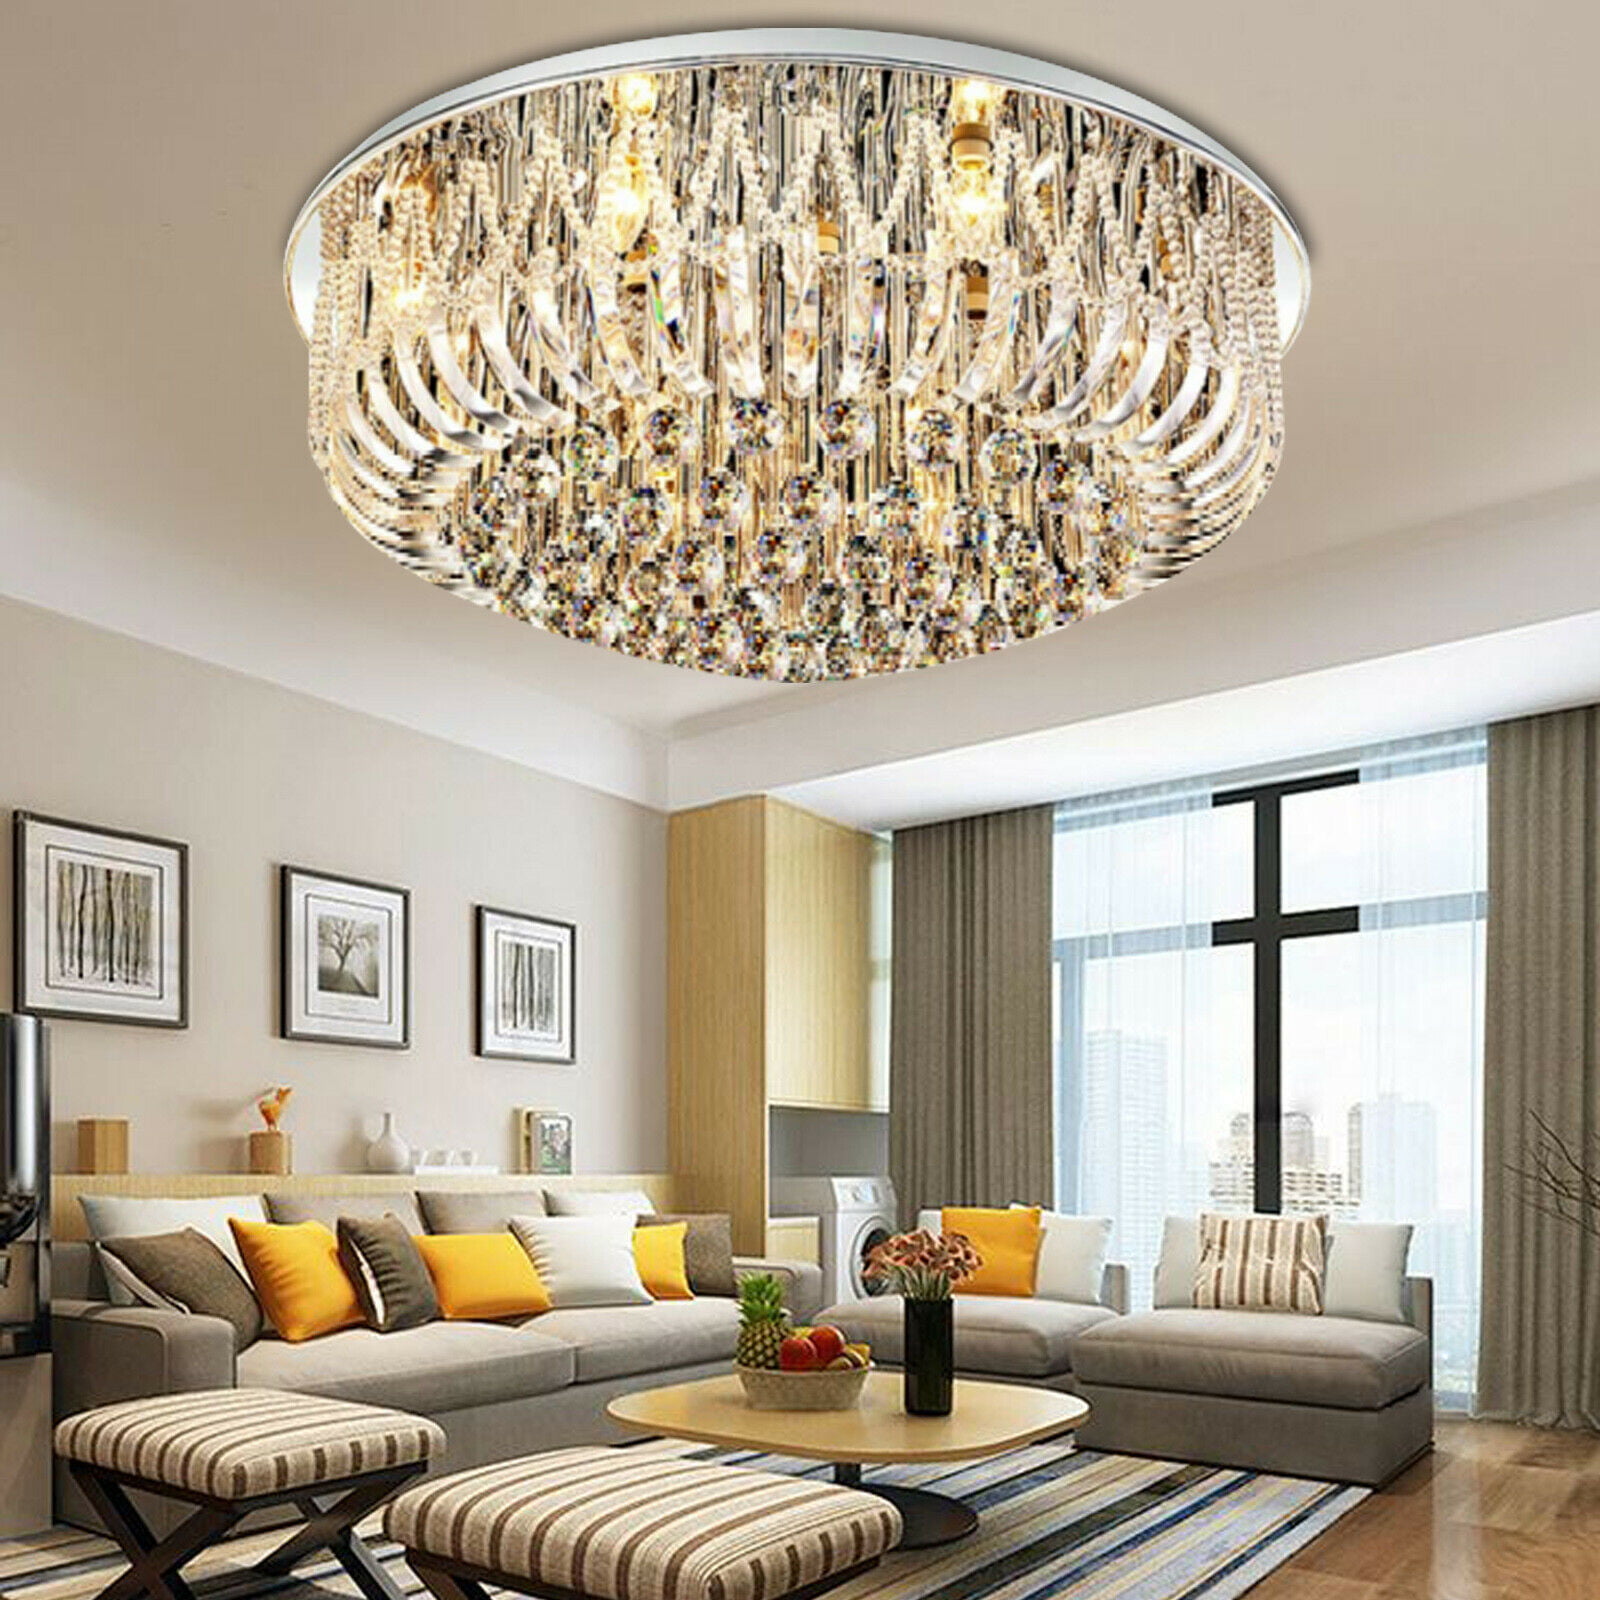 Modern K9 Crystal Ceiling Light Pendant Lamp Aisle Fixture Lighting Chandelier 